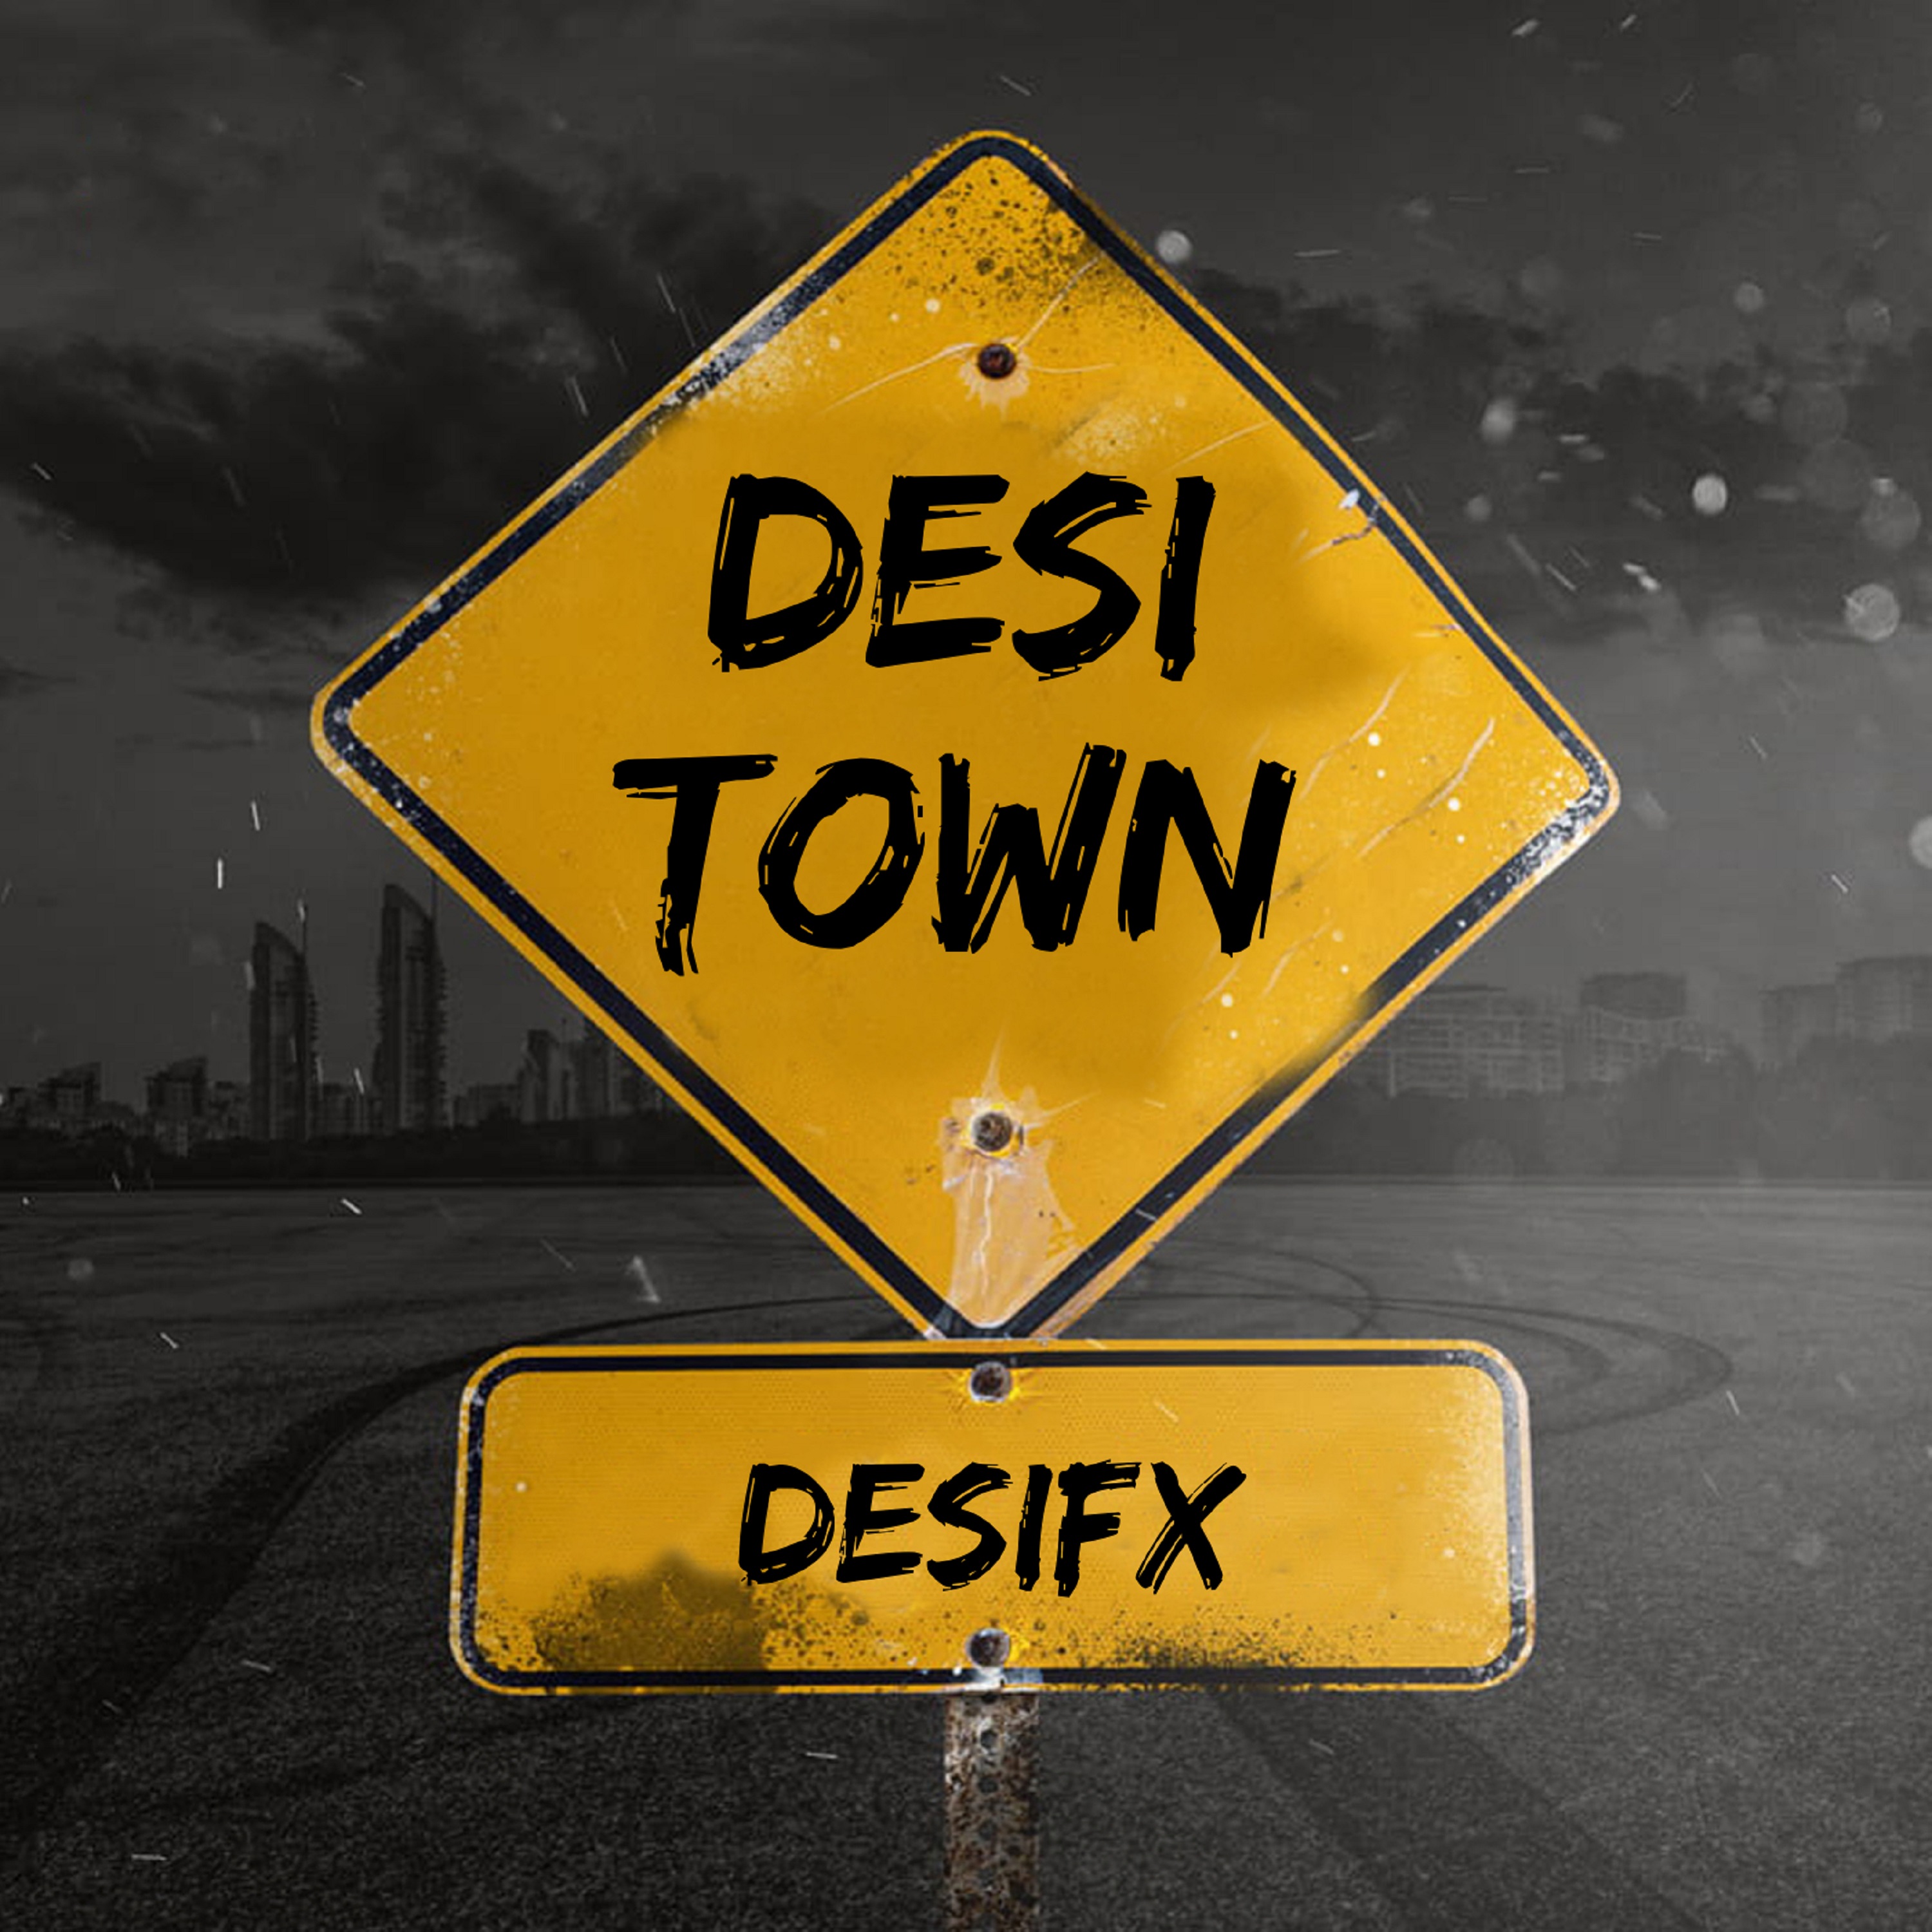 Desi Town Desifx